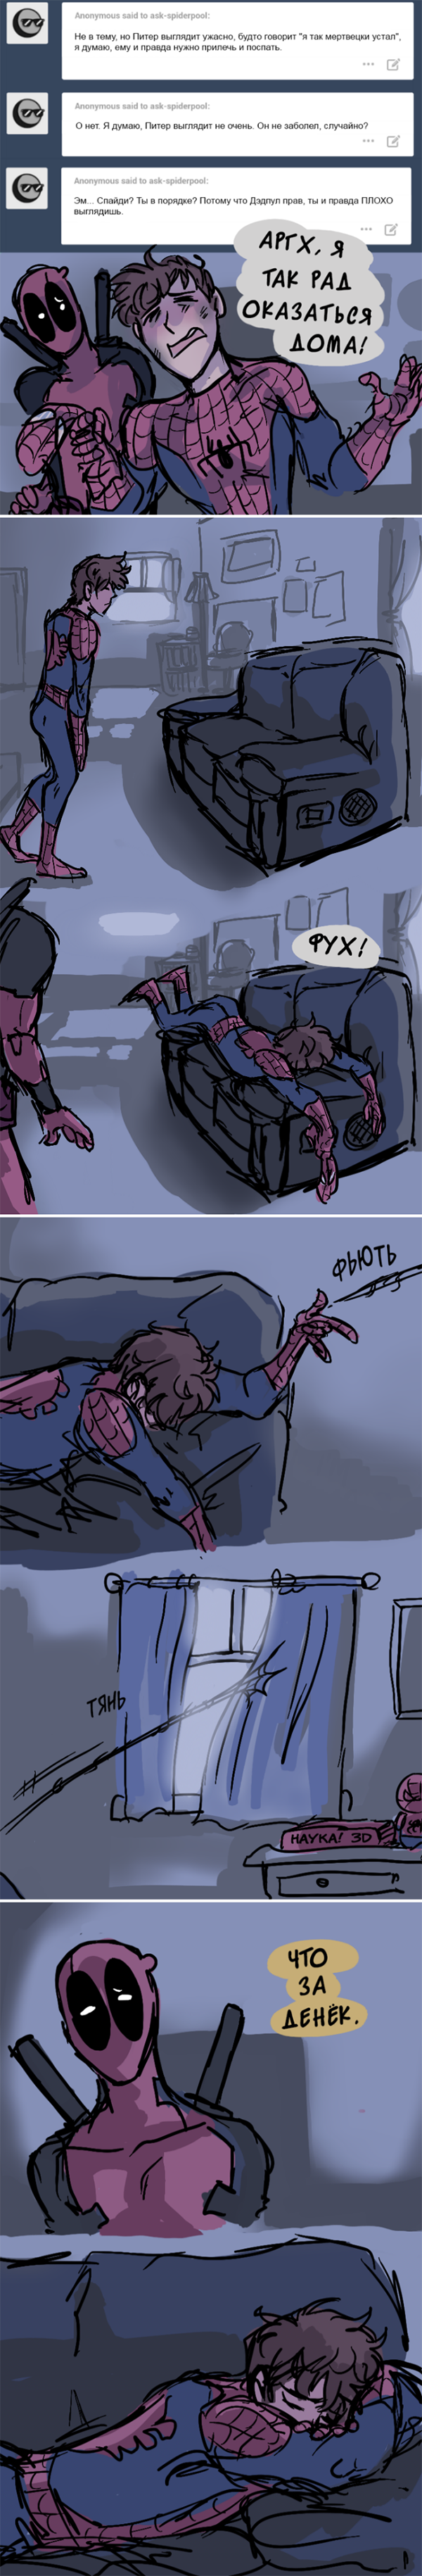 Комикс Спросите Человека-паука и Дэдпула (Ask Spiderpool): выпуск №280